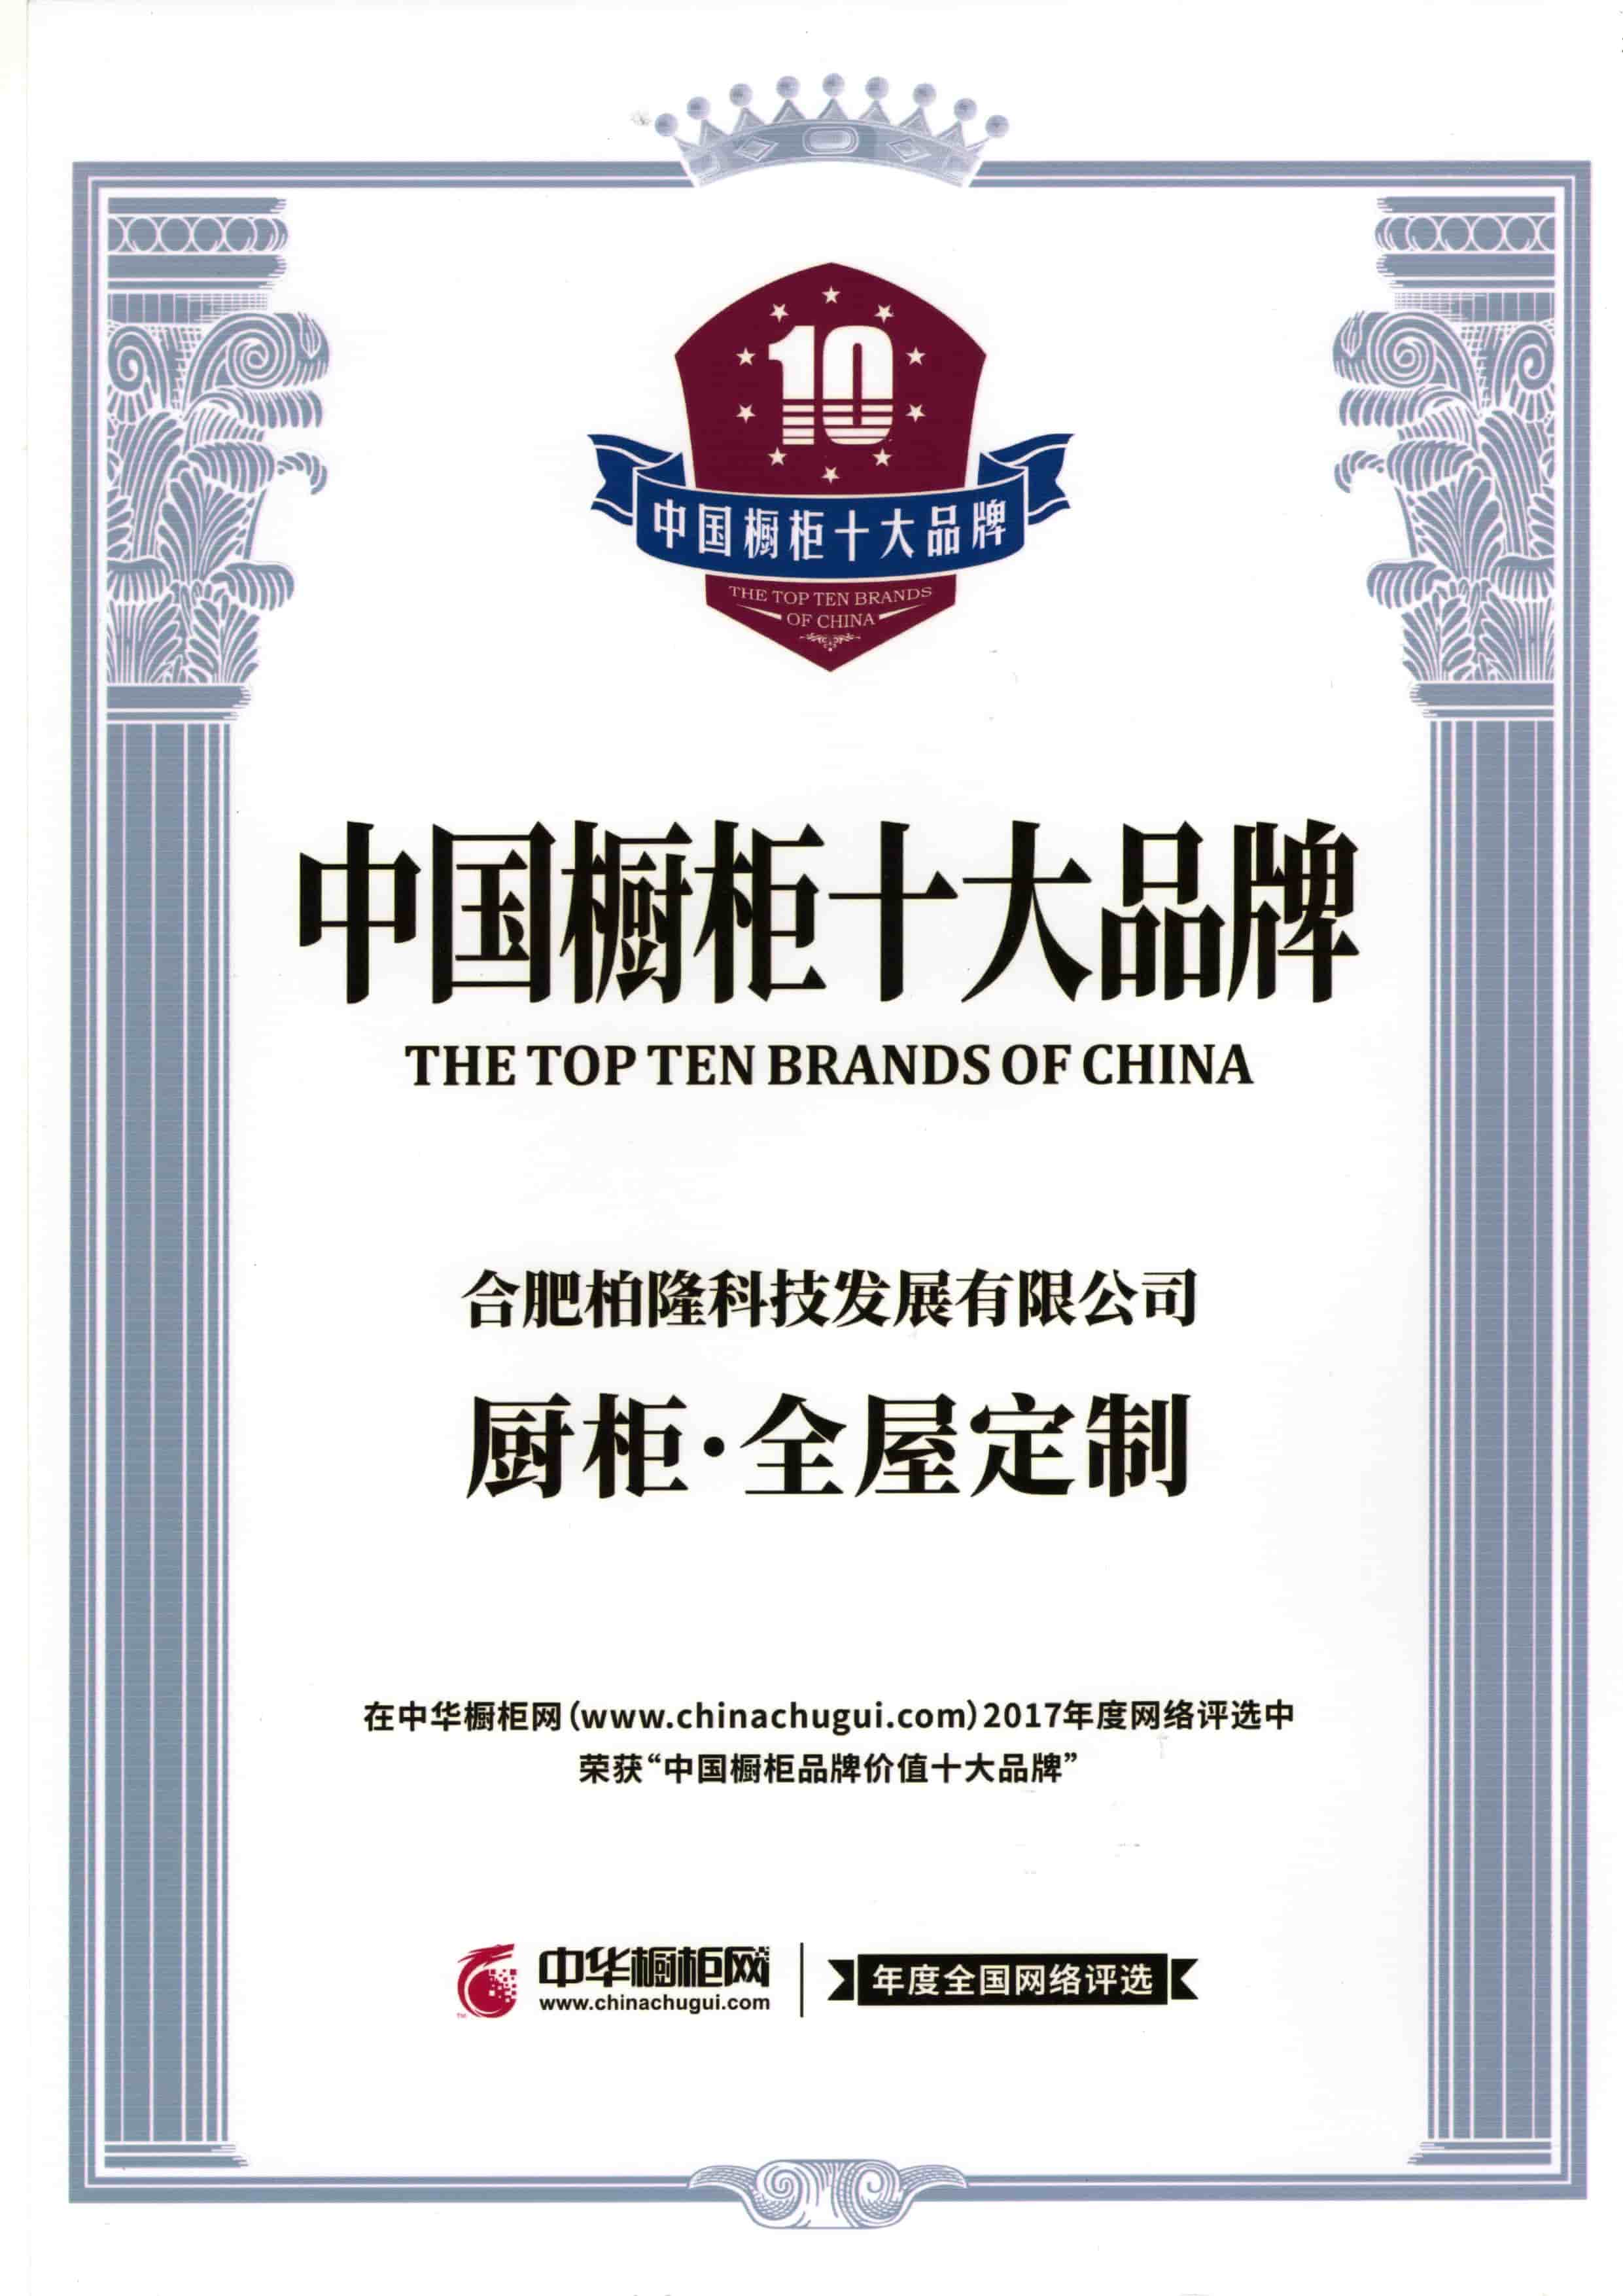 Salah satu dari sepuluh merek teratas di Cina
